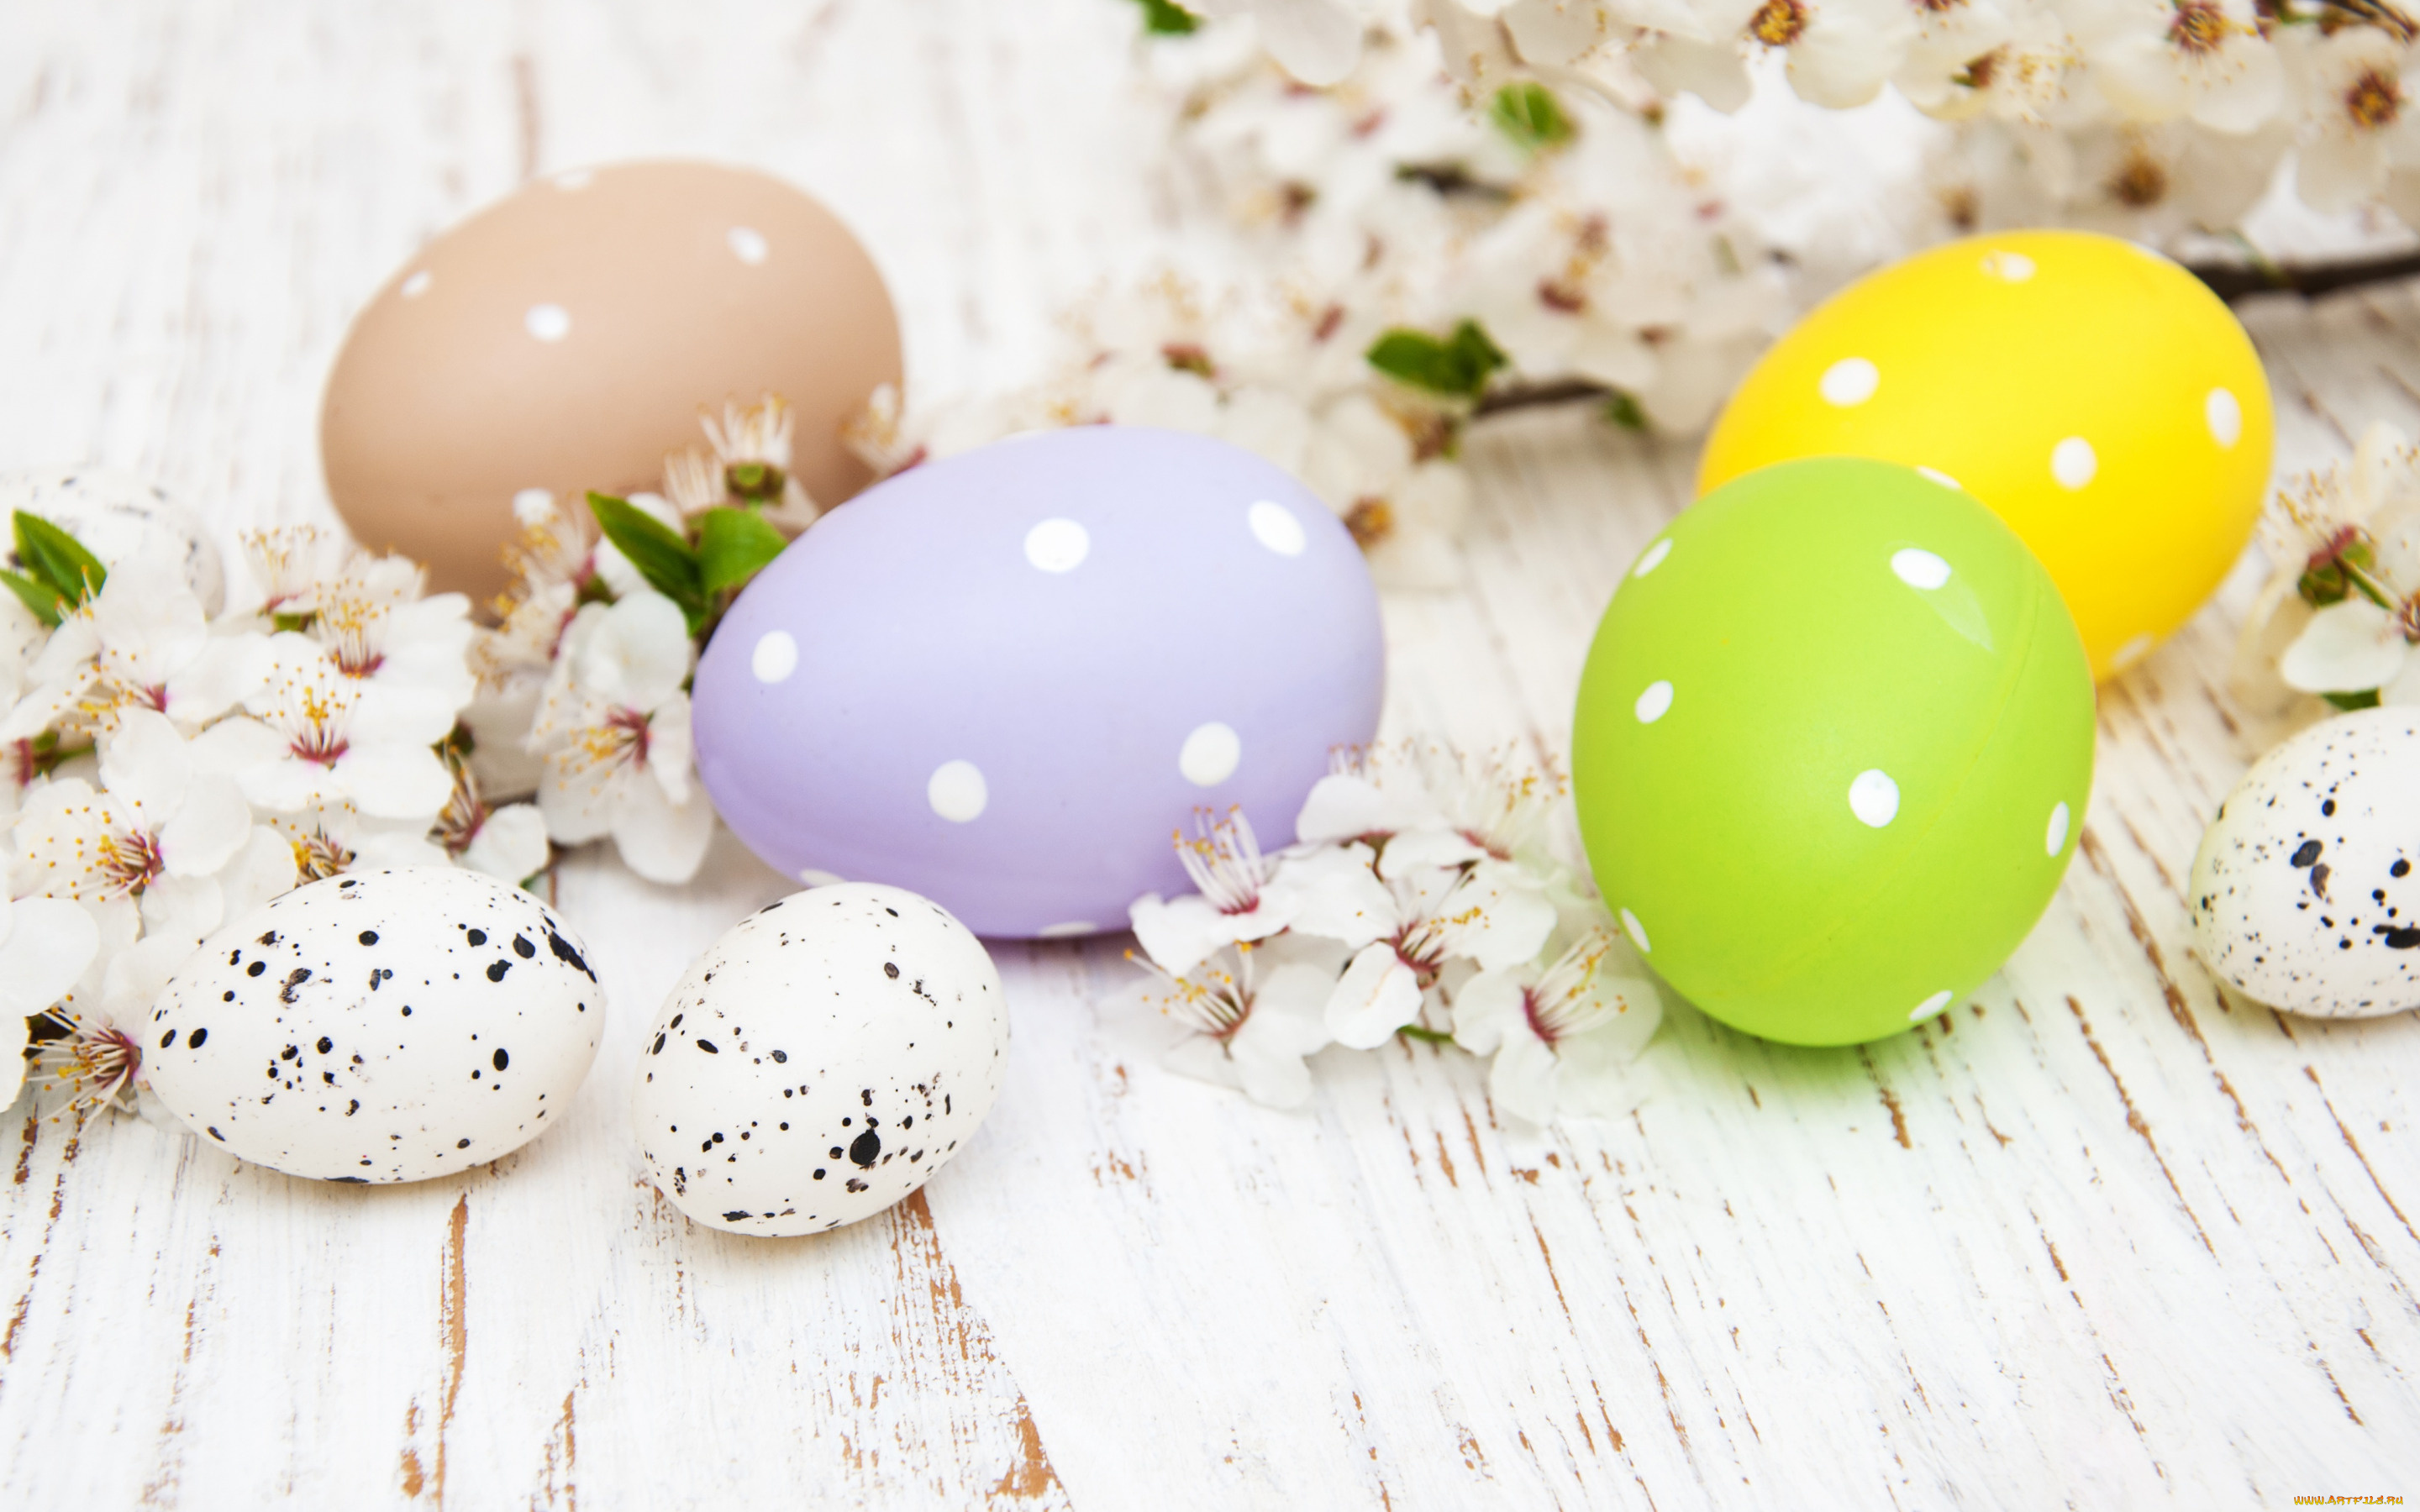 праздничные, пасха, цветы, яйца, colorful, happy, wood, blossom, flowers, spring, easter, eggs, decoration